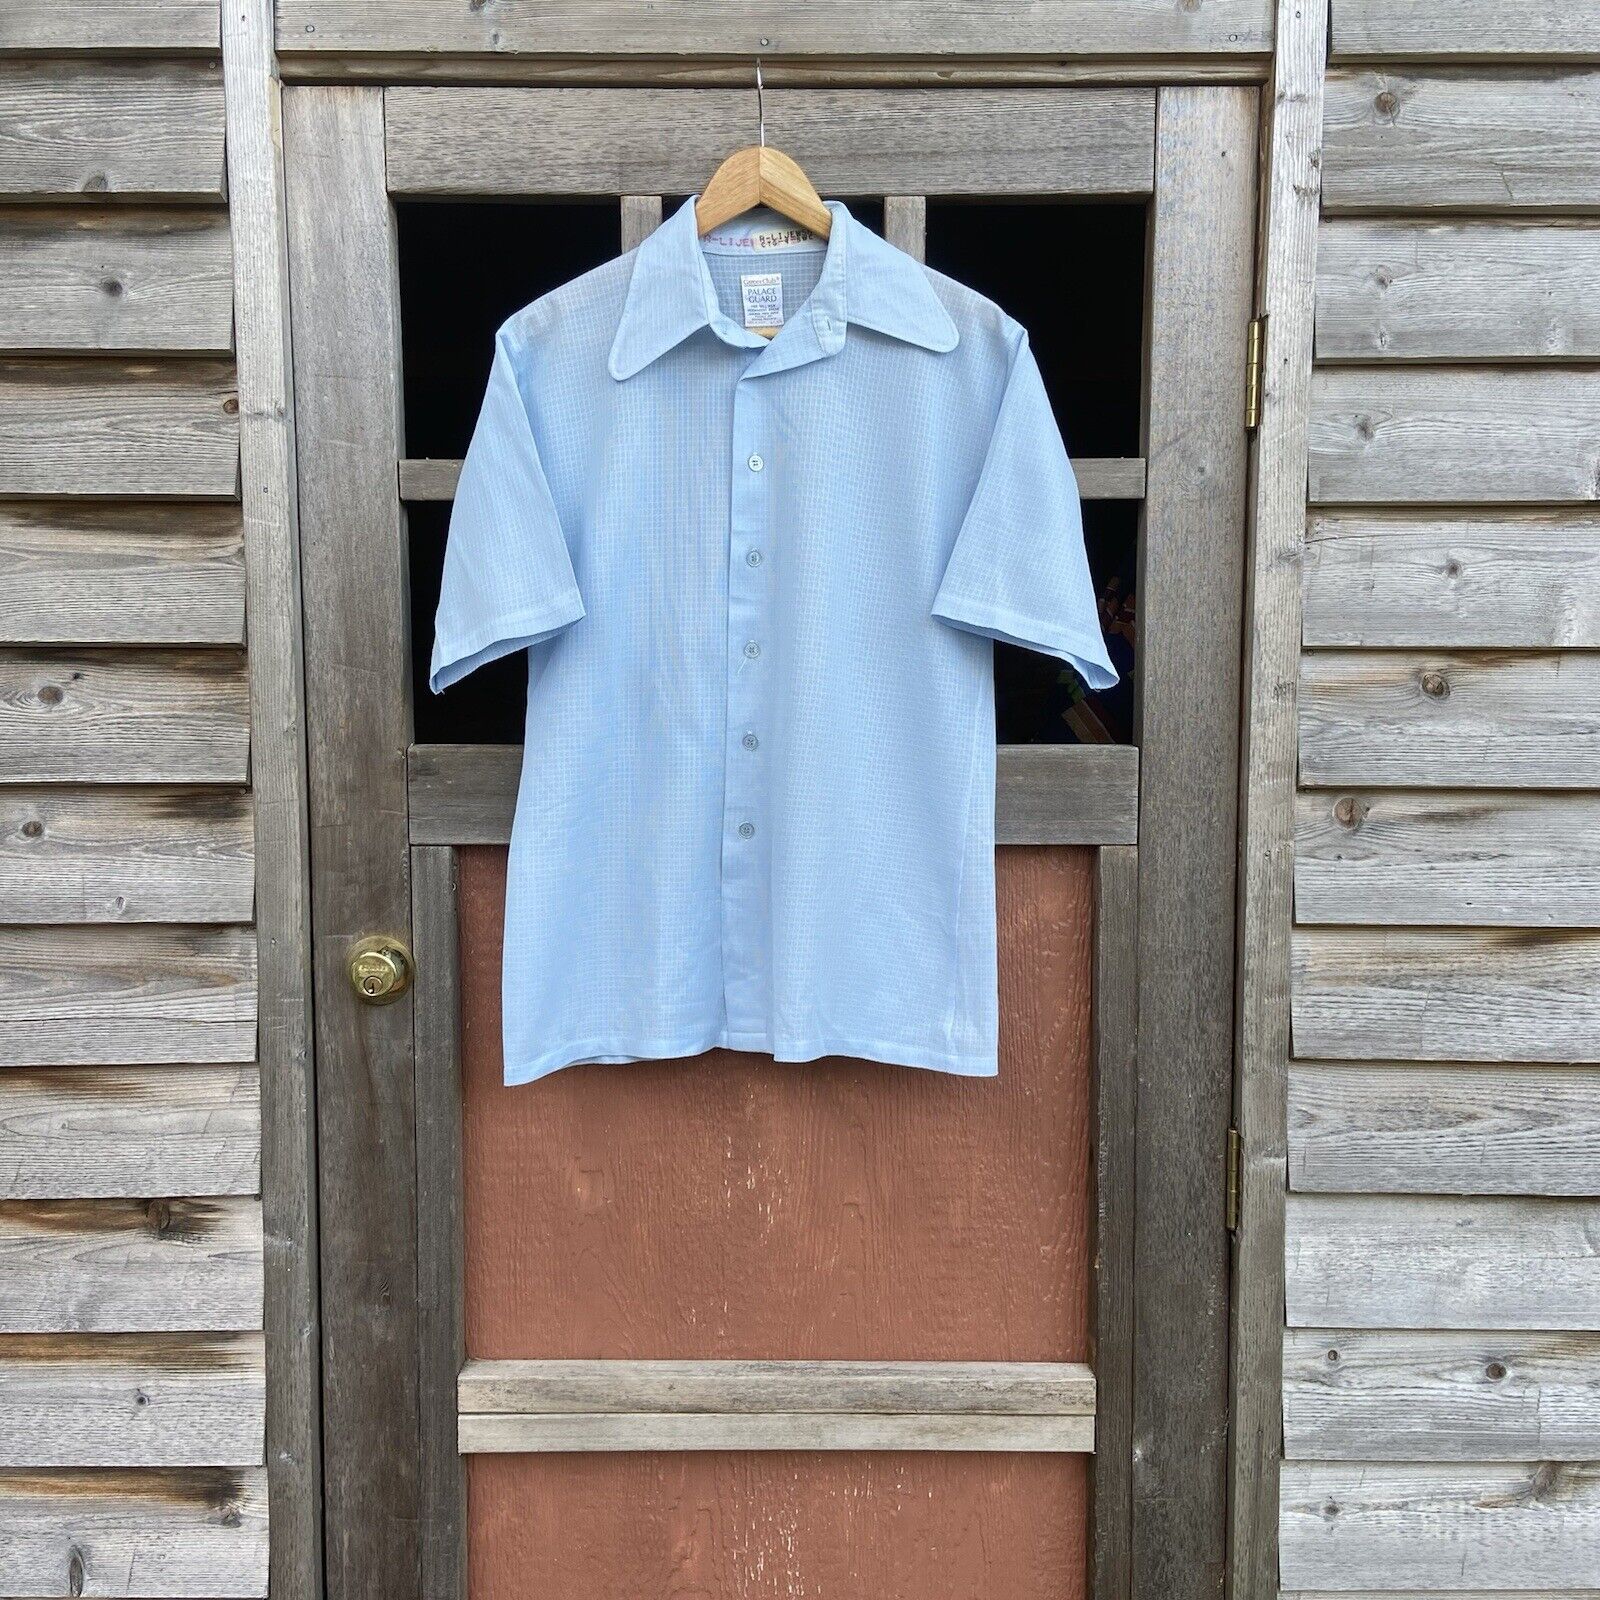 Vintage 50’s Button Up Shirt size med/large - image 1